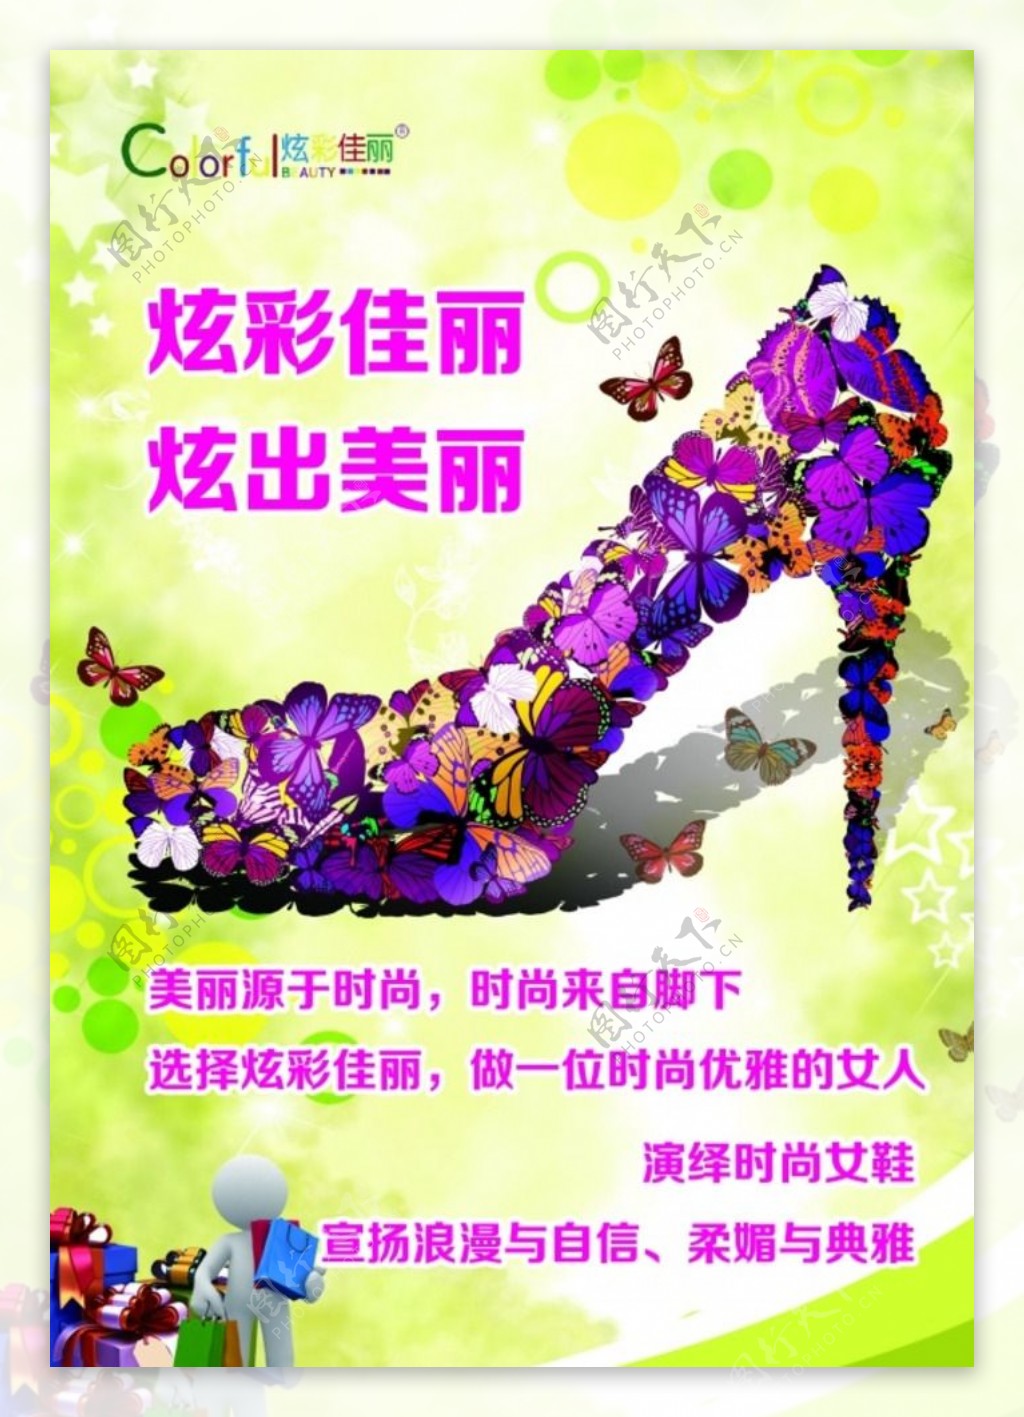 炫彩佳丽女鞋创意宣传海报psd图片